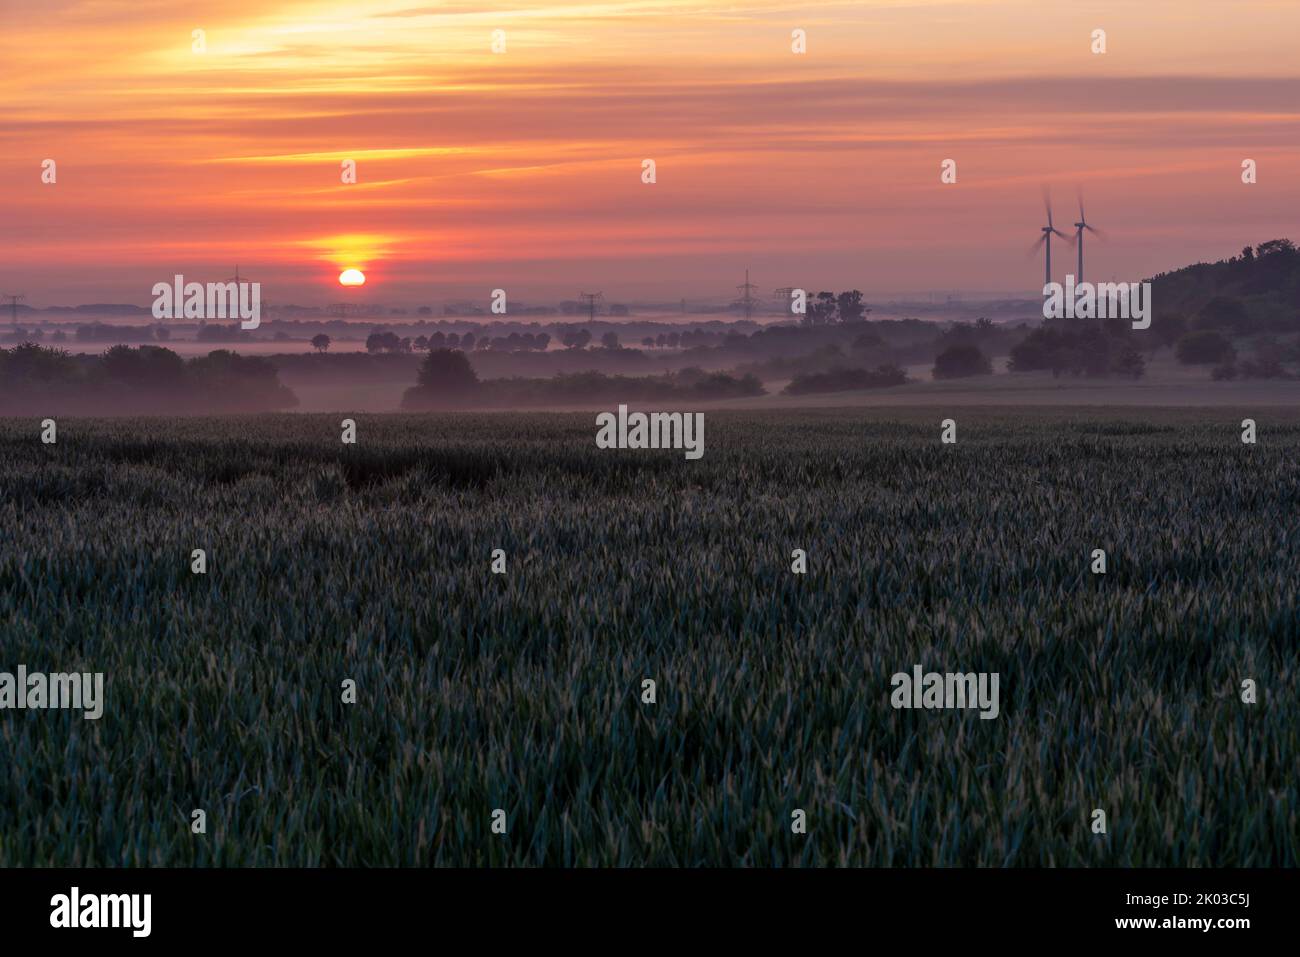 Salida del sol en Magdeburger Börde, postes de energía, turbinas de viento, campo de grano, Irxleben, Sajonia-Anhalt, Alemania Foto de stock